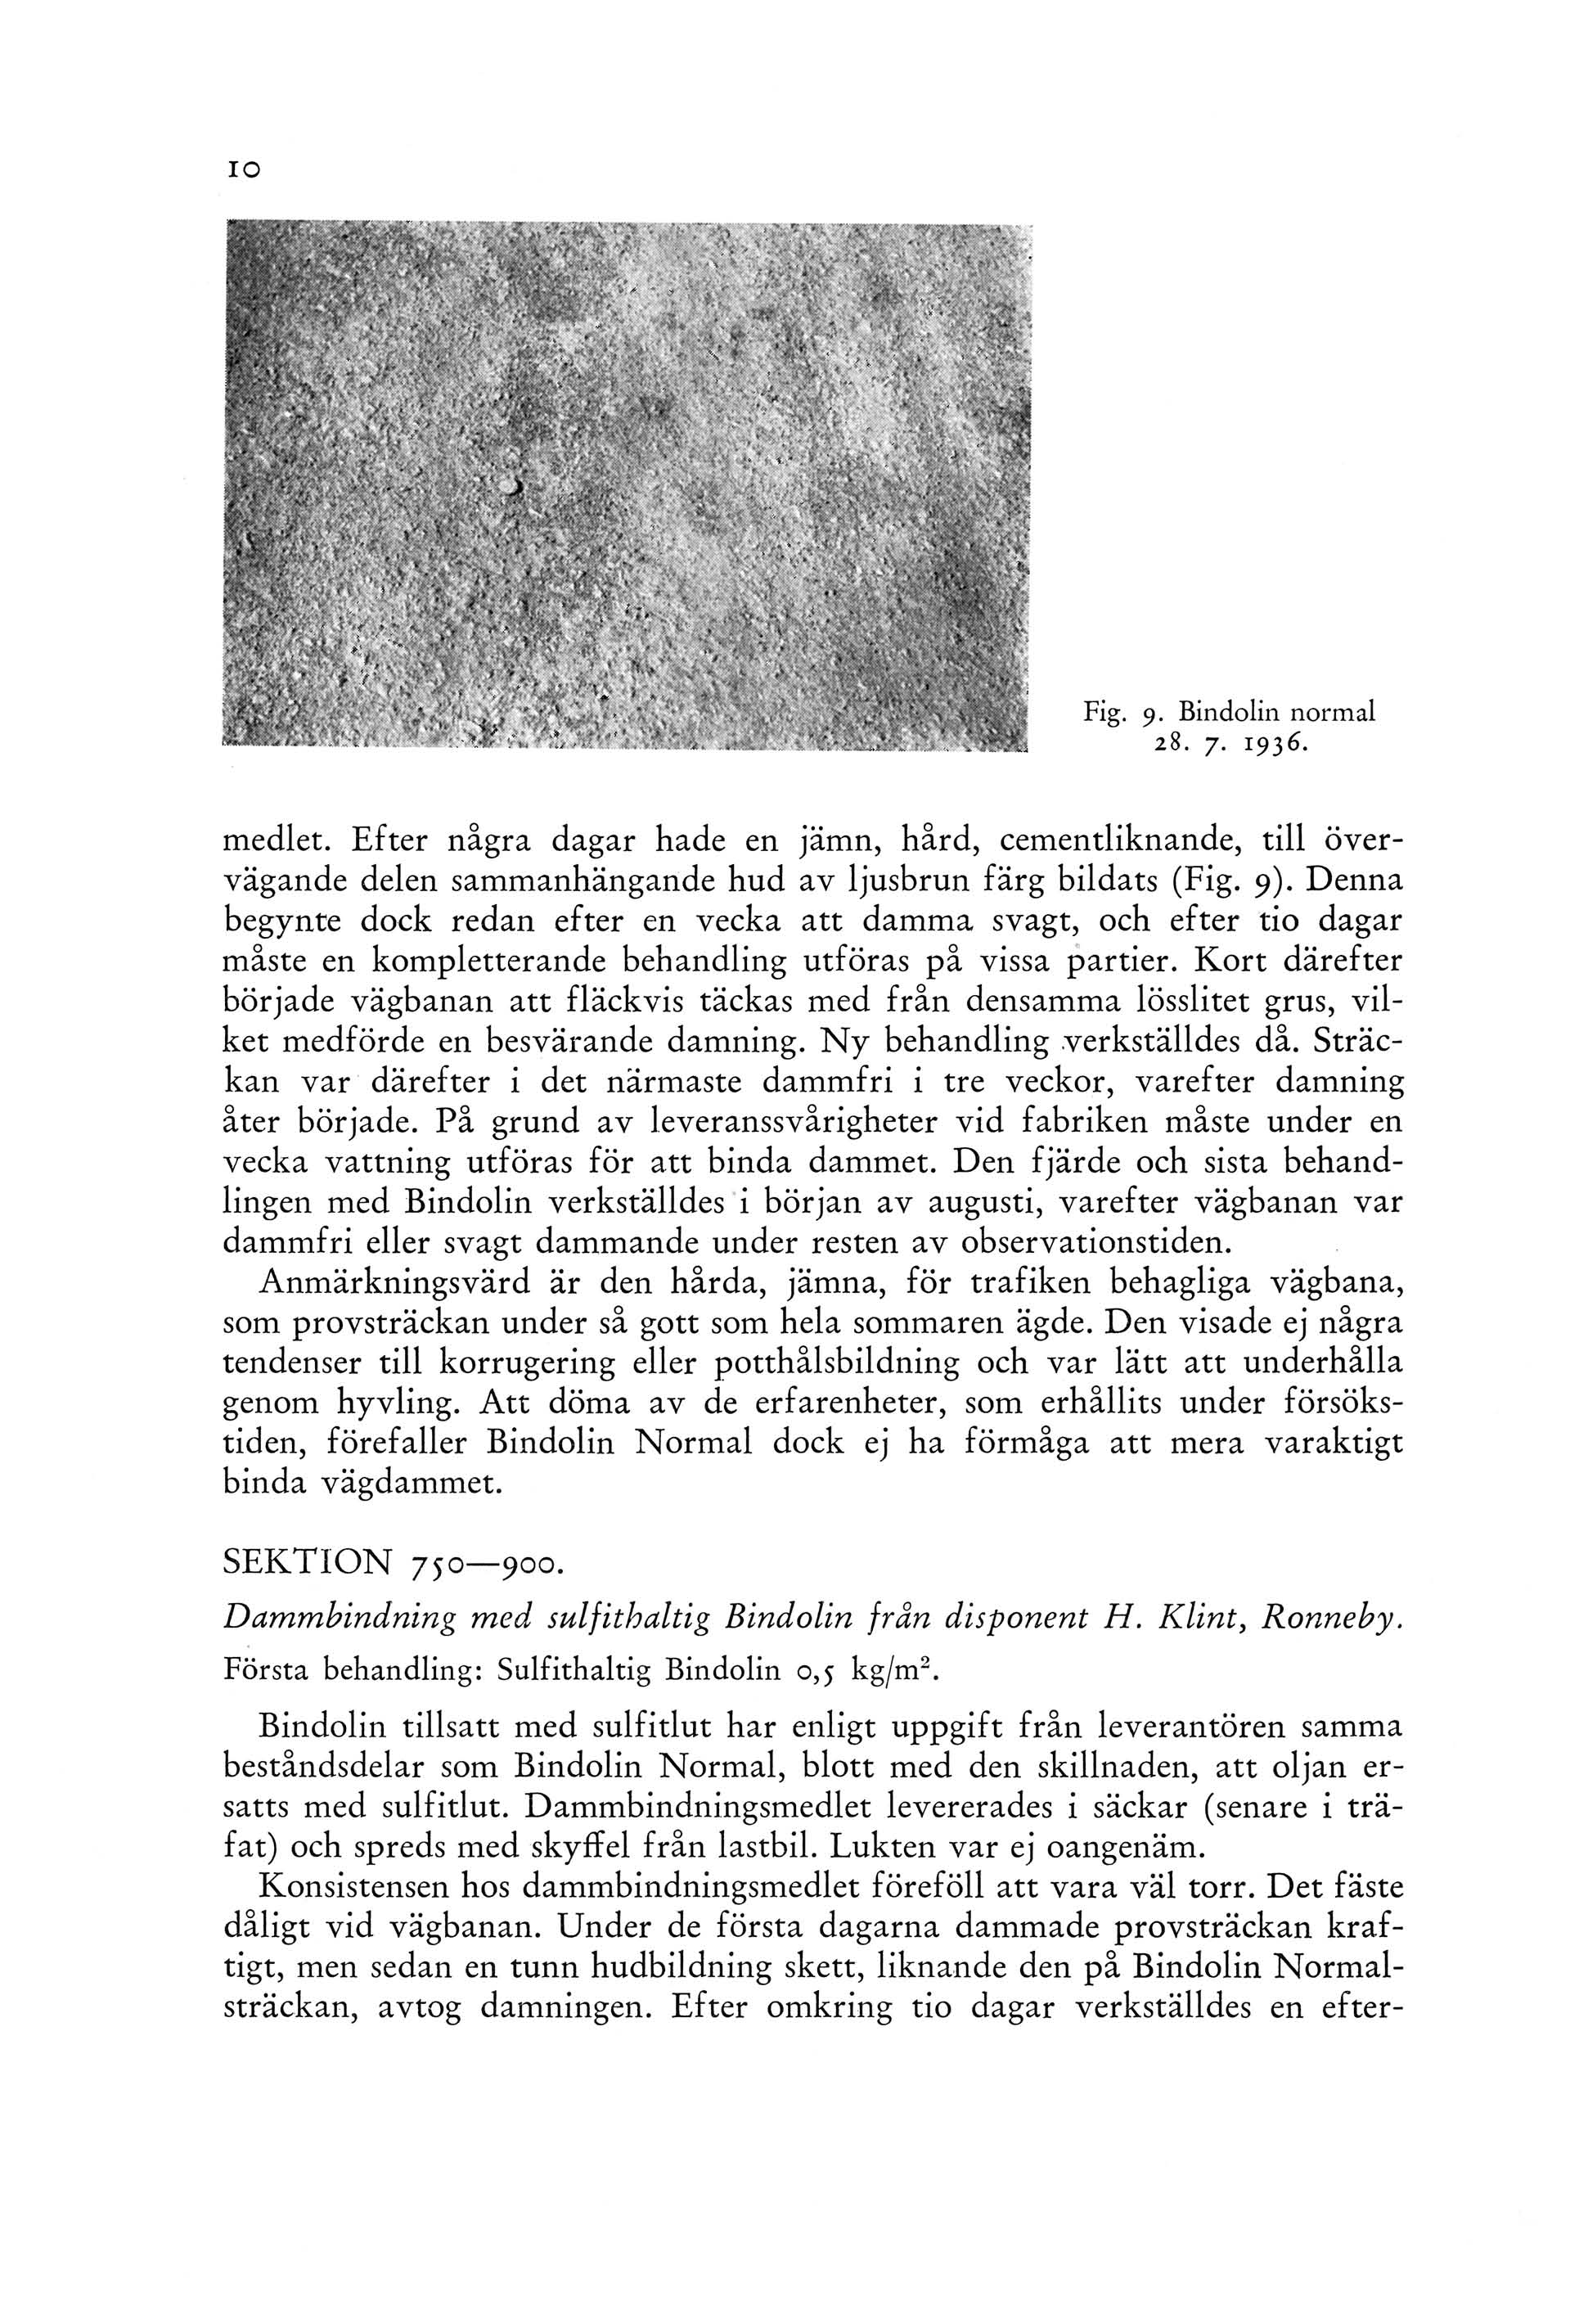 Fig. 9. Bindolin normal 28. 7. 1936. medlet. Efter några dagar hade en jämn, hård, cementliknande, till övervägande delen sammanhängande hud av ljusbrun färg bildats (Fig. 9).